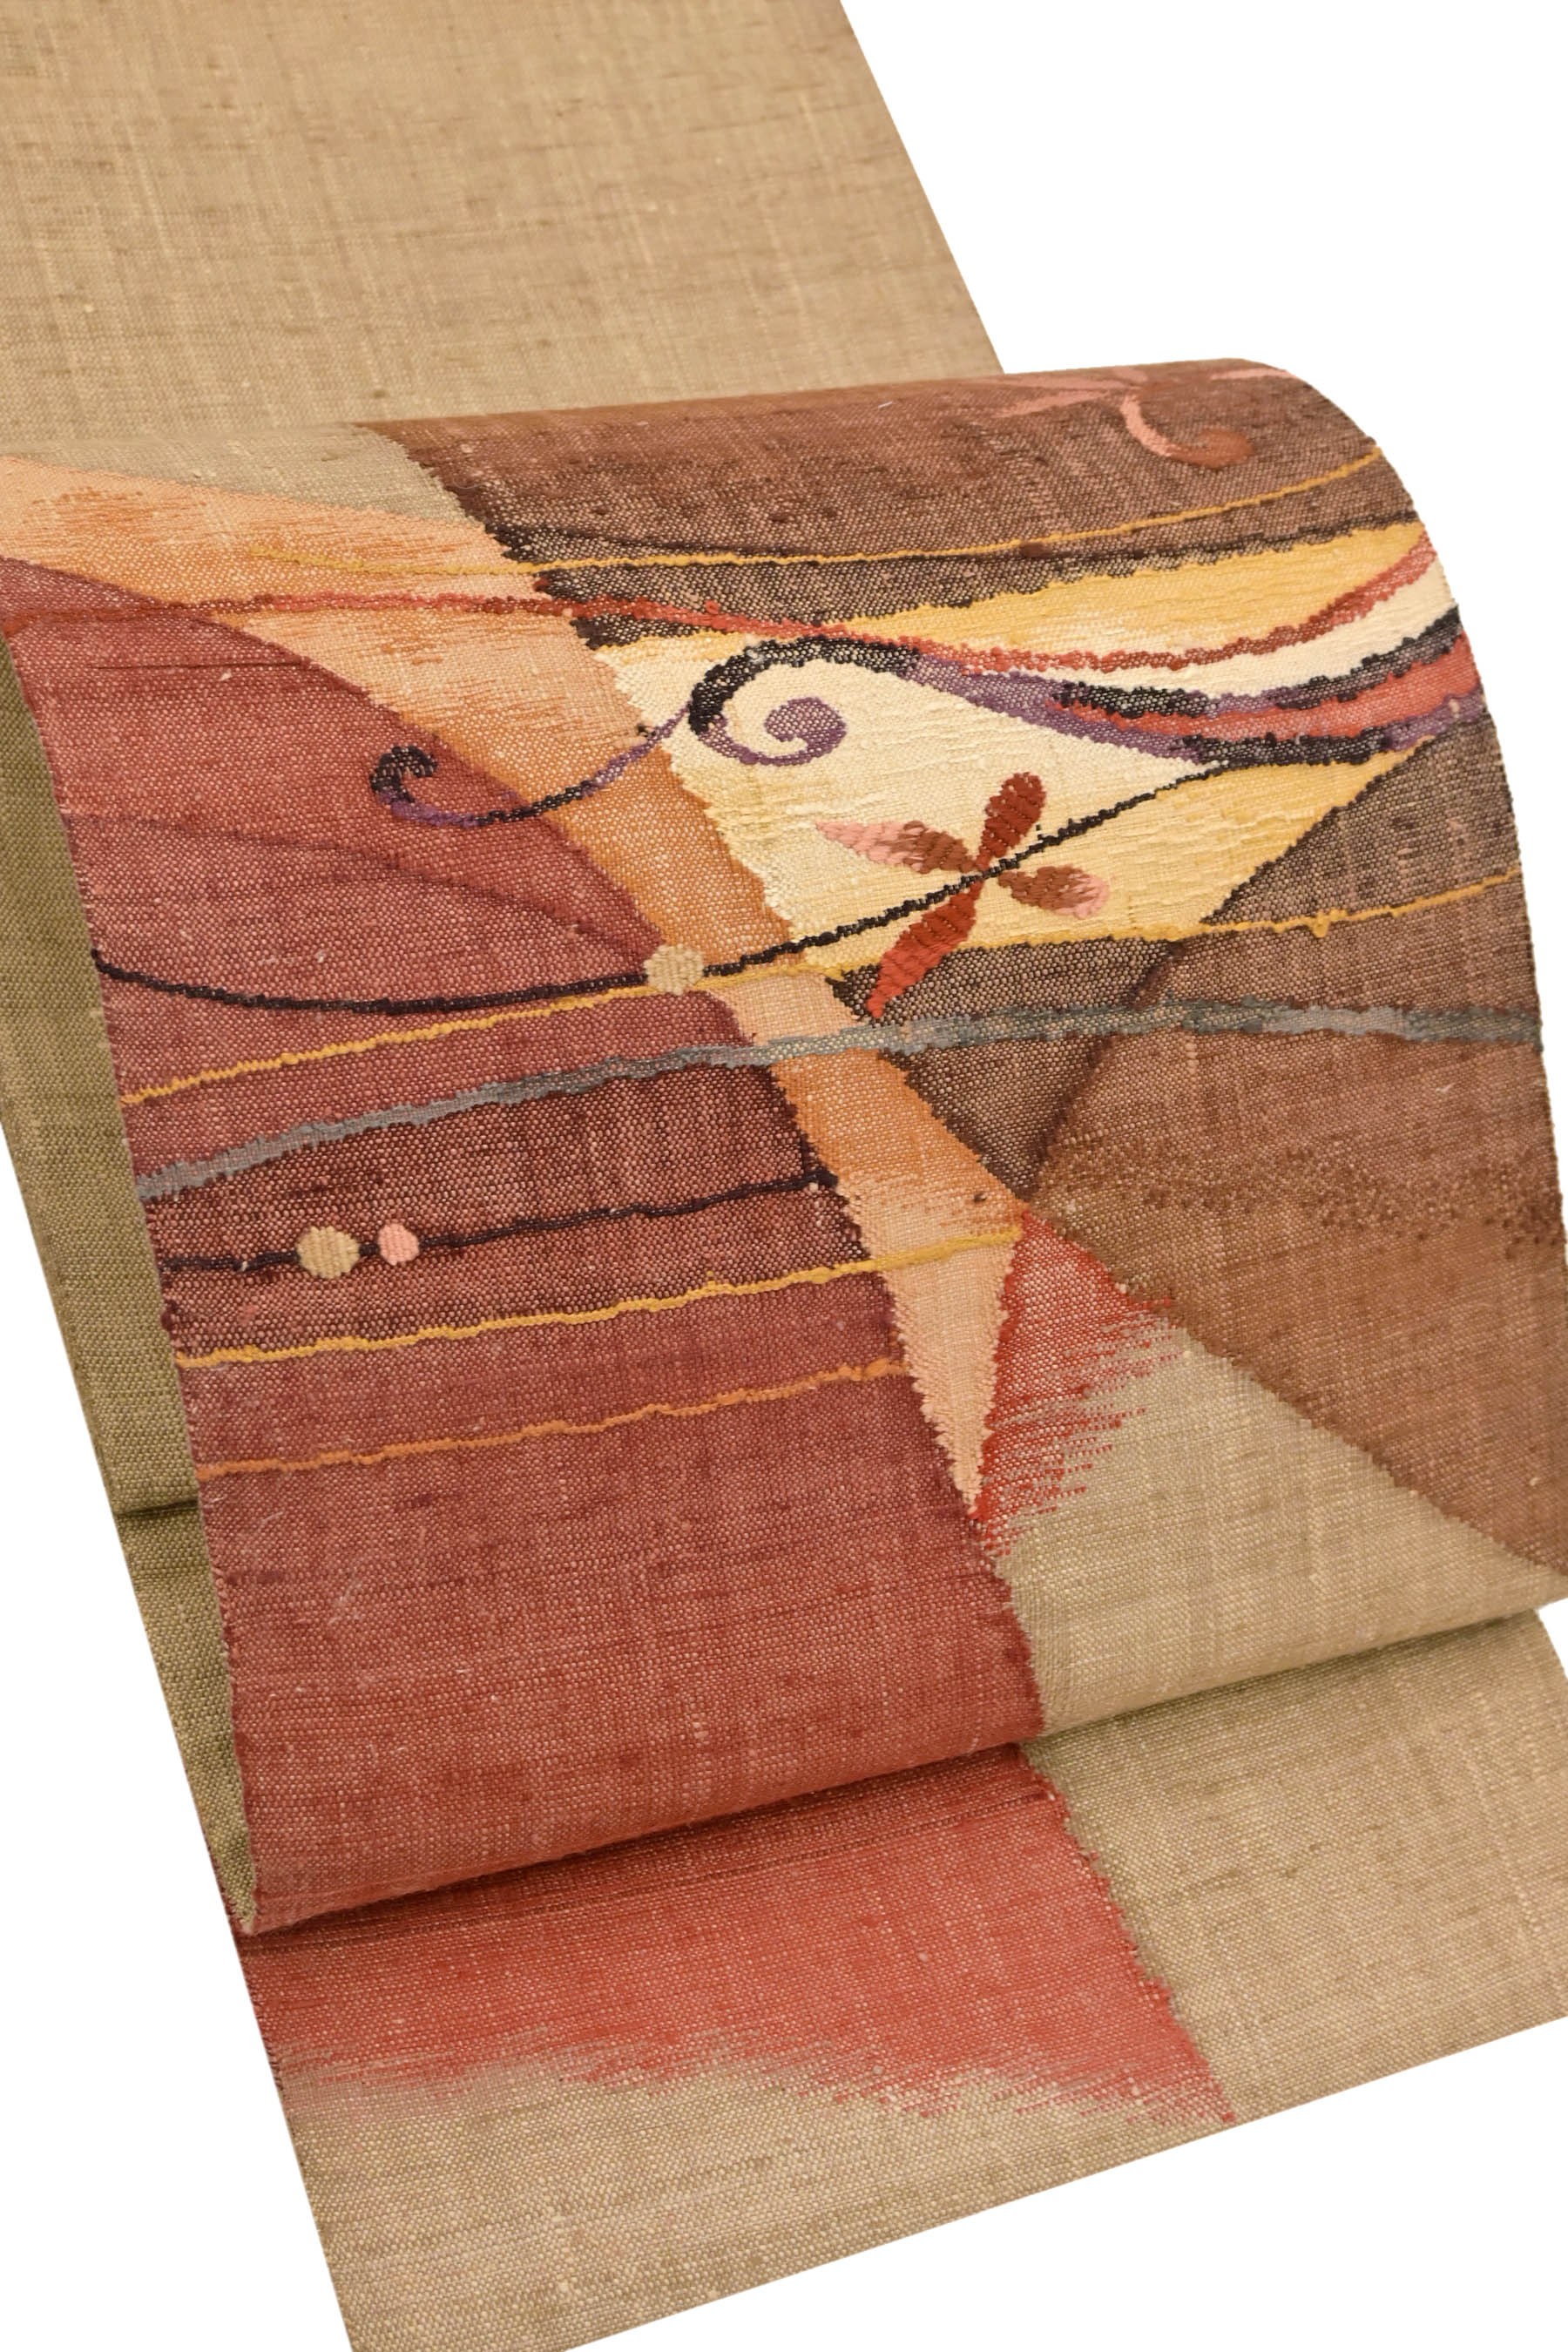 渡文　紬地の名古屋帯褐色紅梅色老竹色の抽象柄です